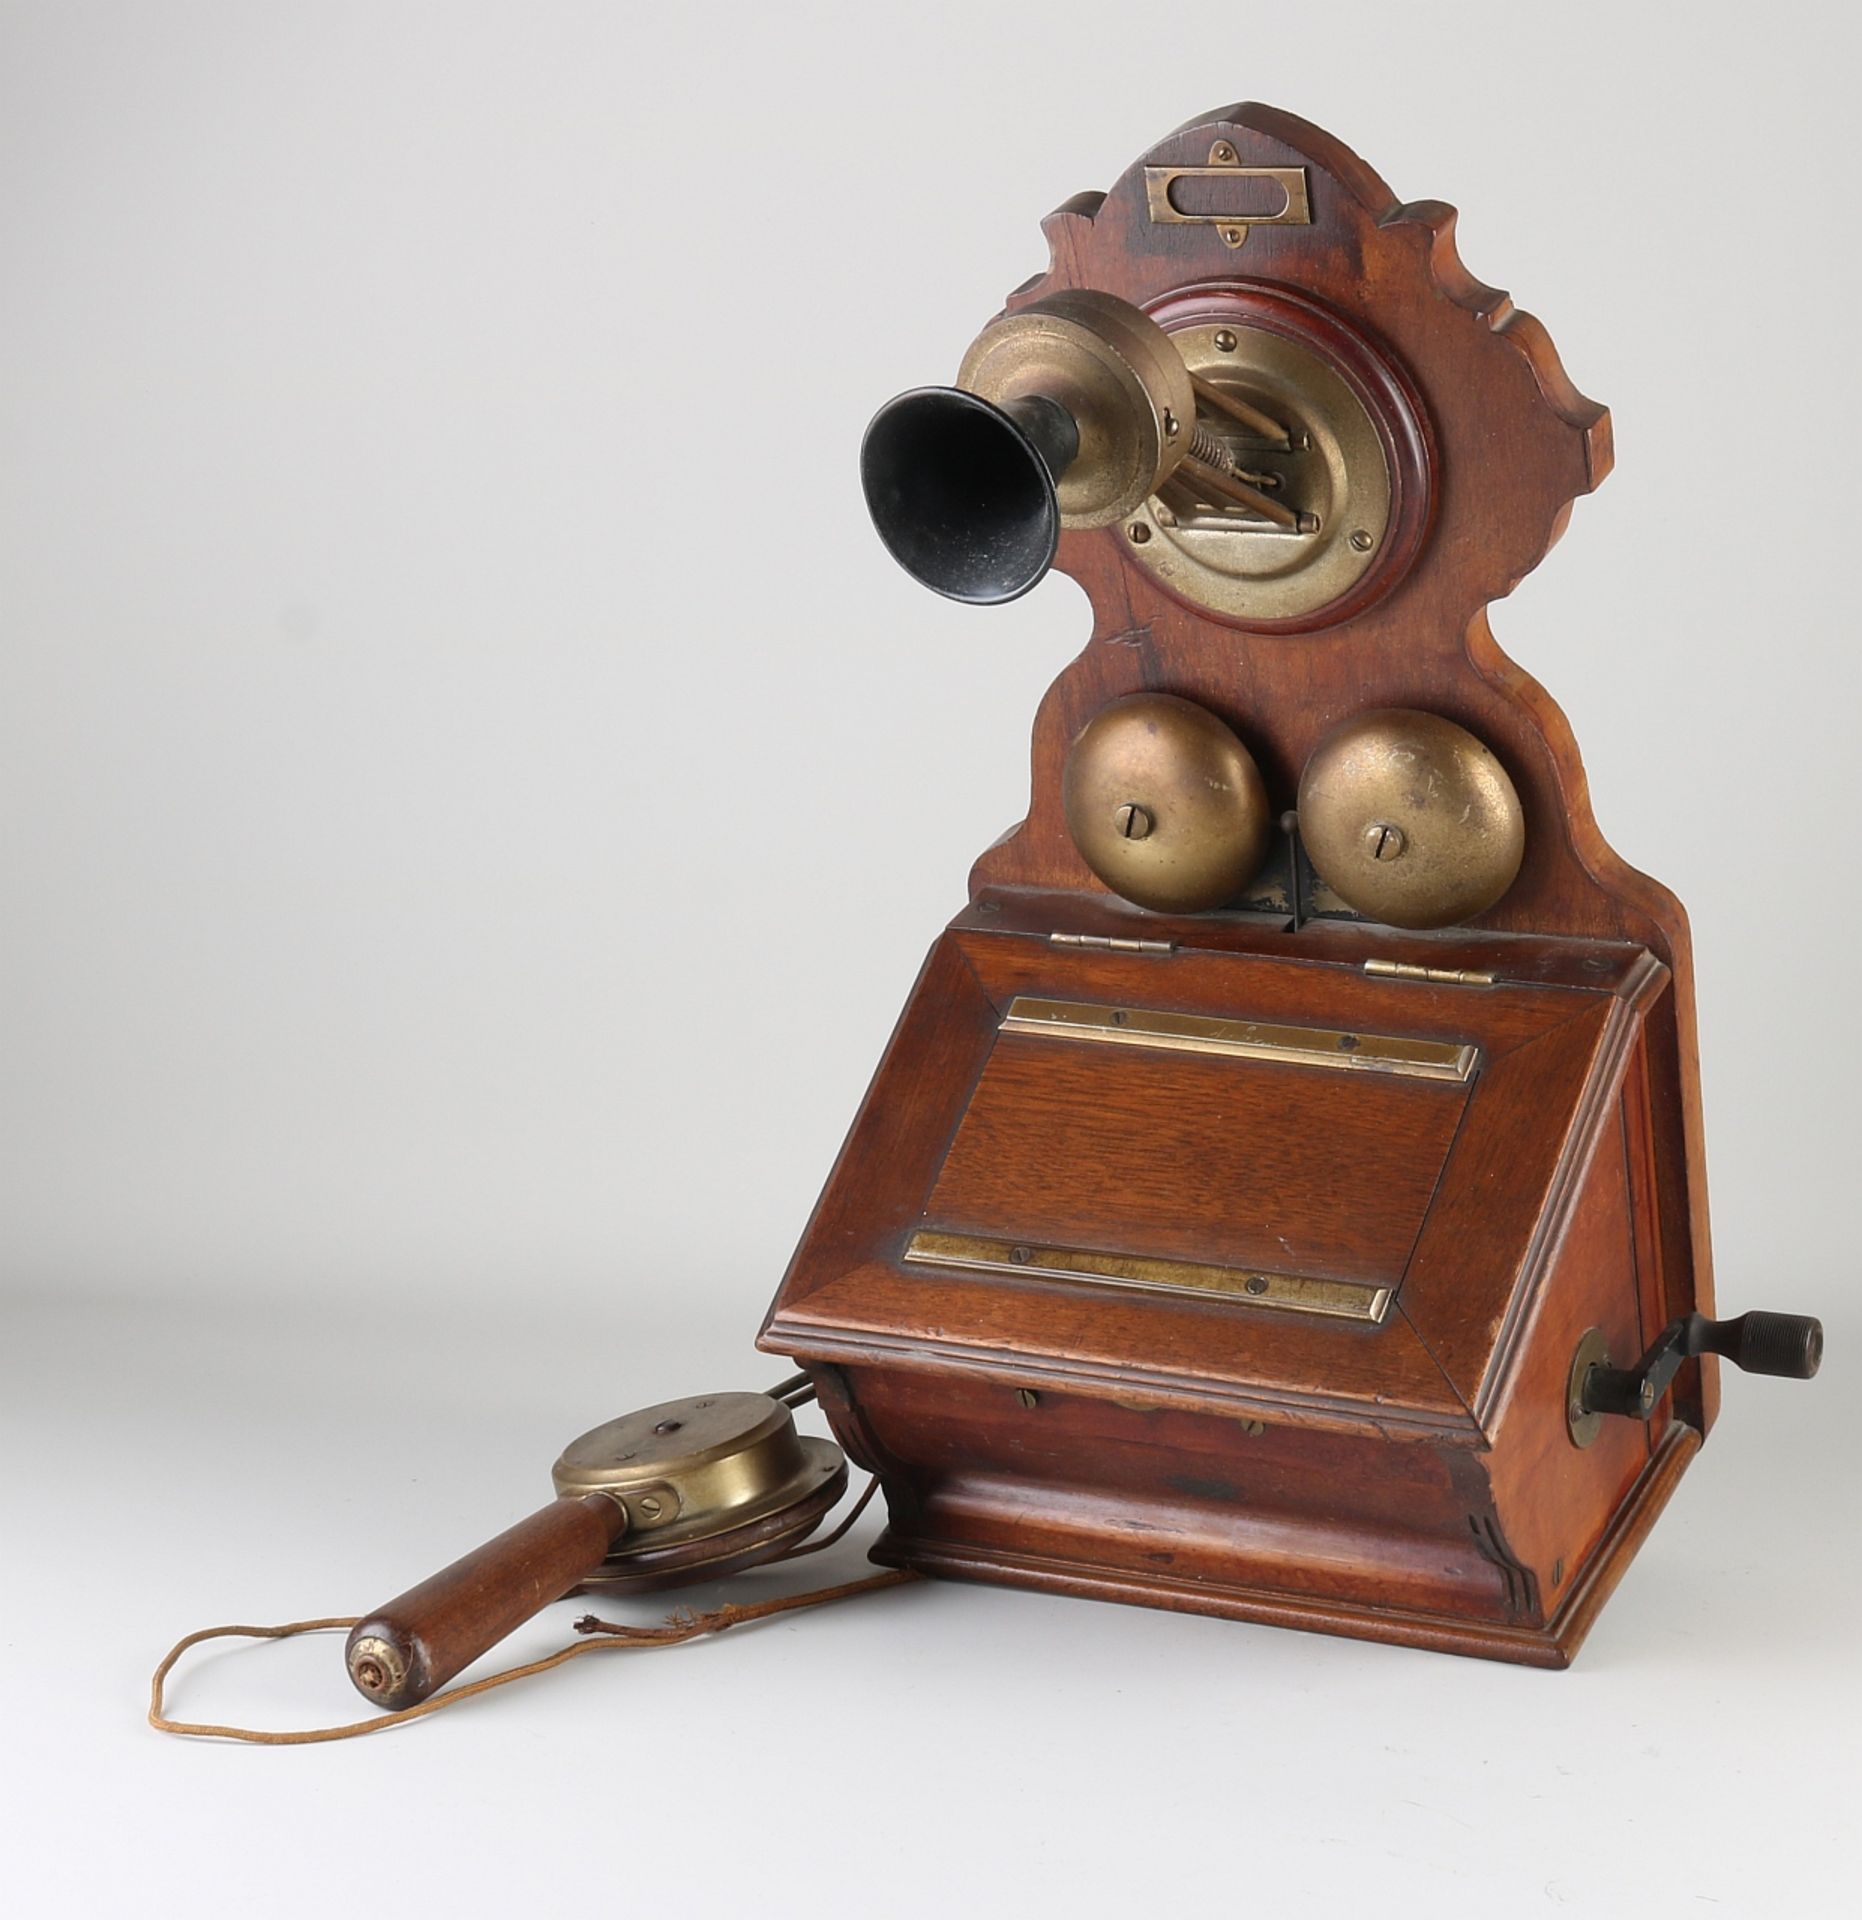 Antique telephone, 1910